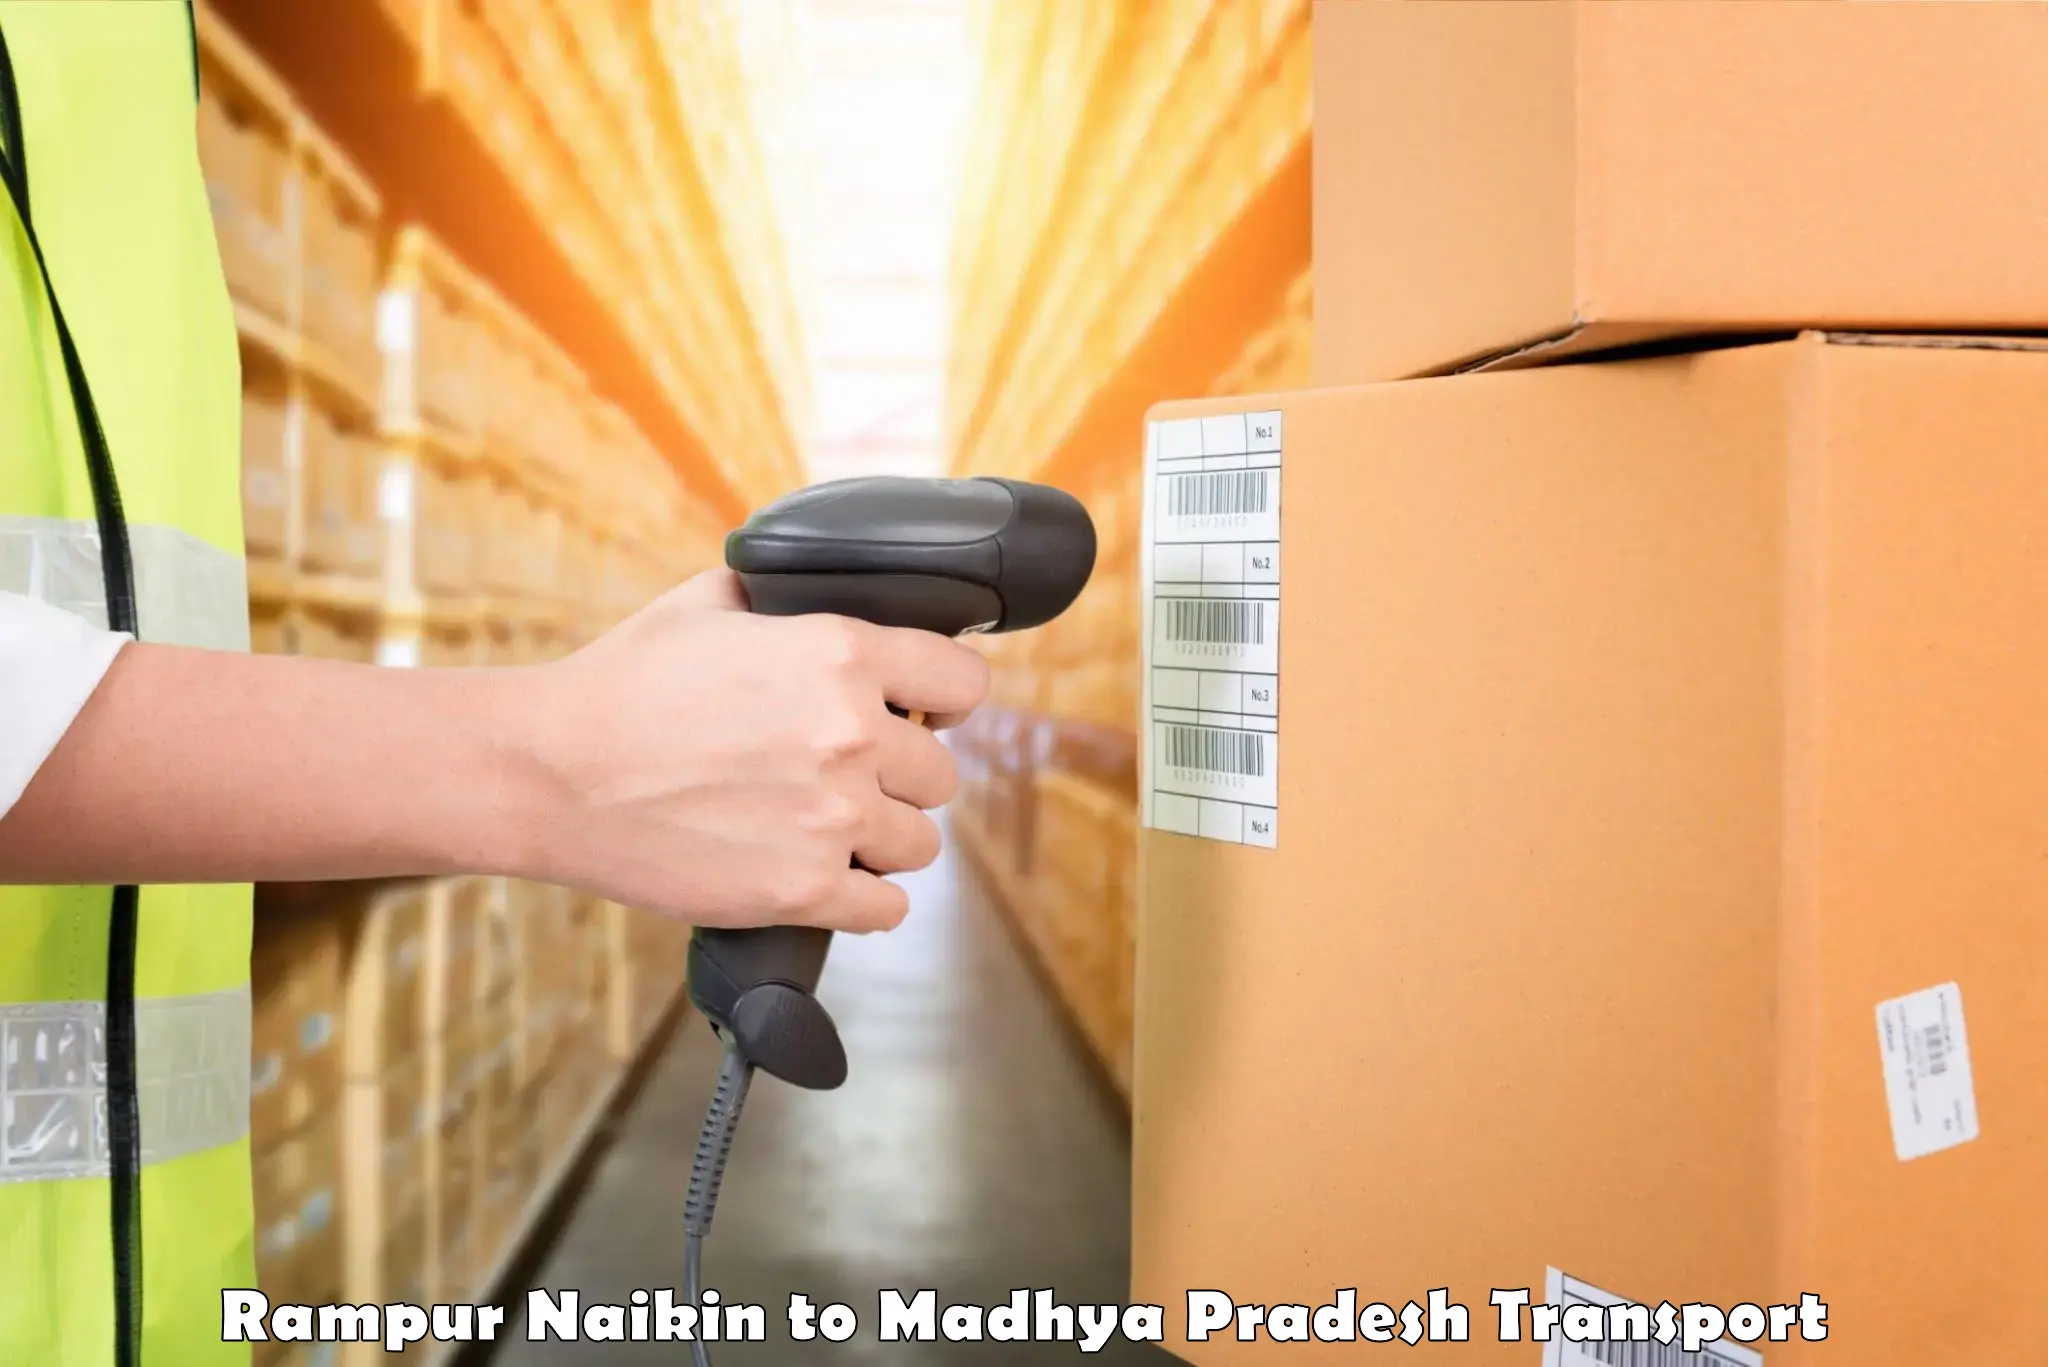 Domestic goods transportation services Rampur Naikin to Nagda